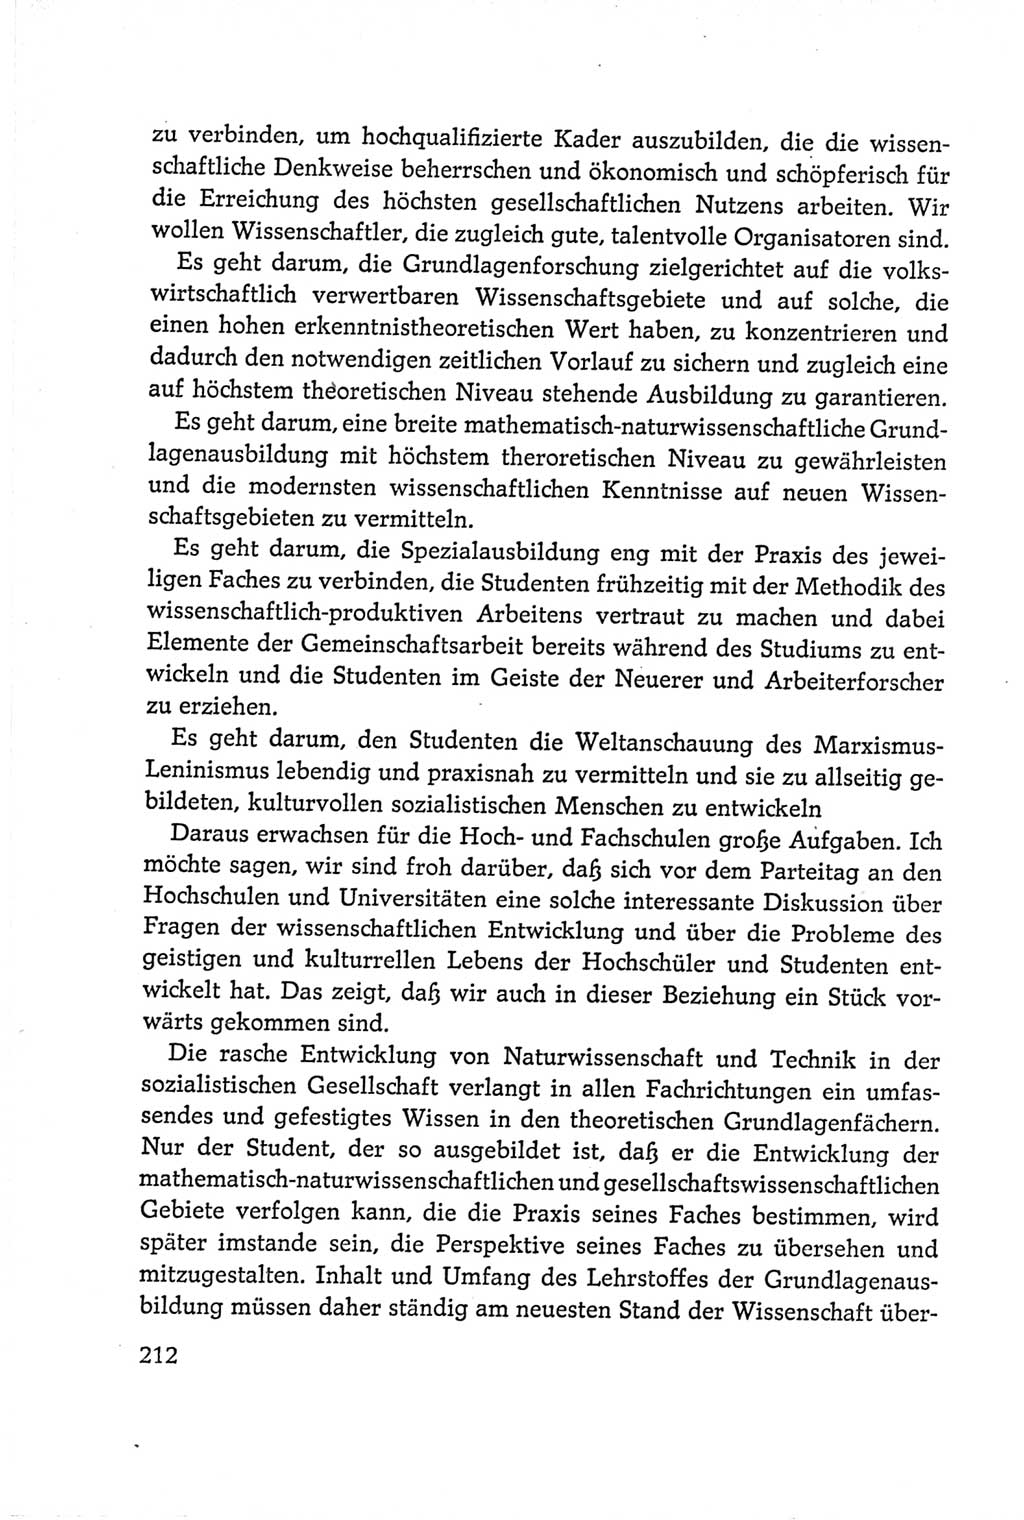 Protokoll der Verhandlungen des Ⅵ. Parteitages der Sozialistischen Einheitspartei Deutschlands (SED) [Deutsche Demokratische Republik (DDR)] 1963, Band Ⅰ, Seite 212 (Prot. Verh. Ⅵ. PT SED DDR 1963, Bd. Ⅰ, S. 212)